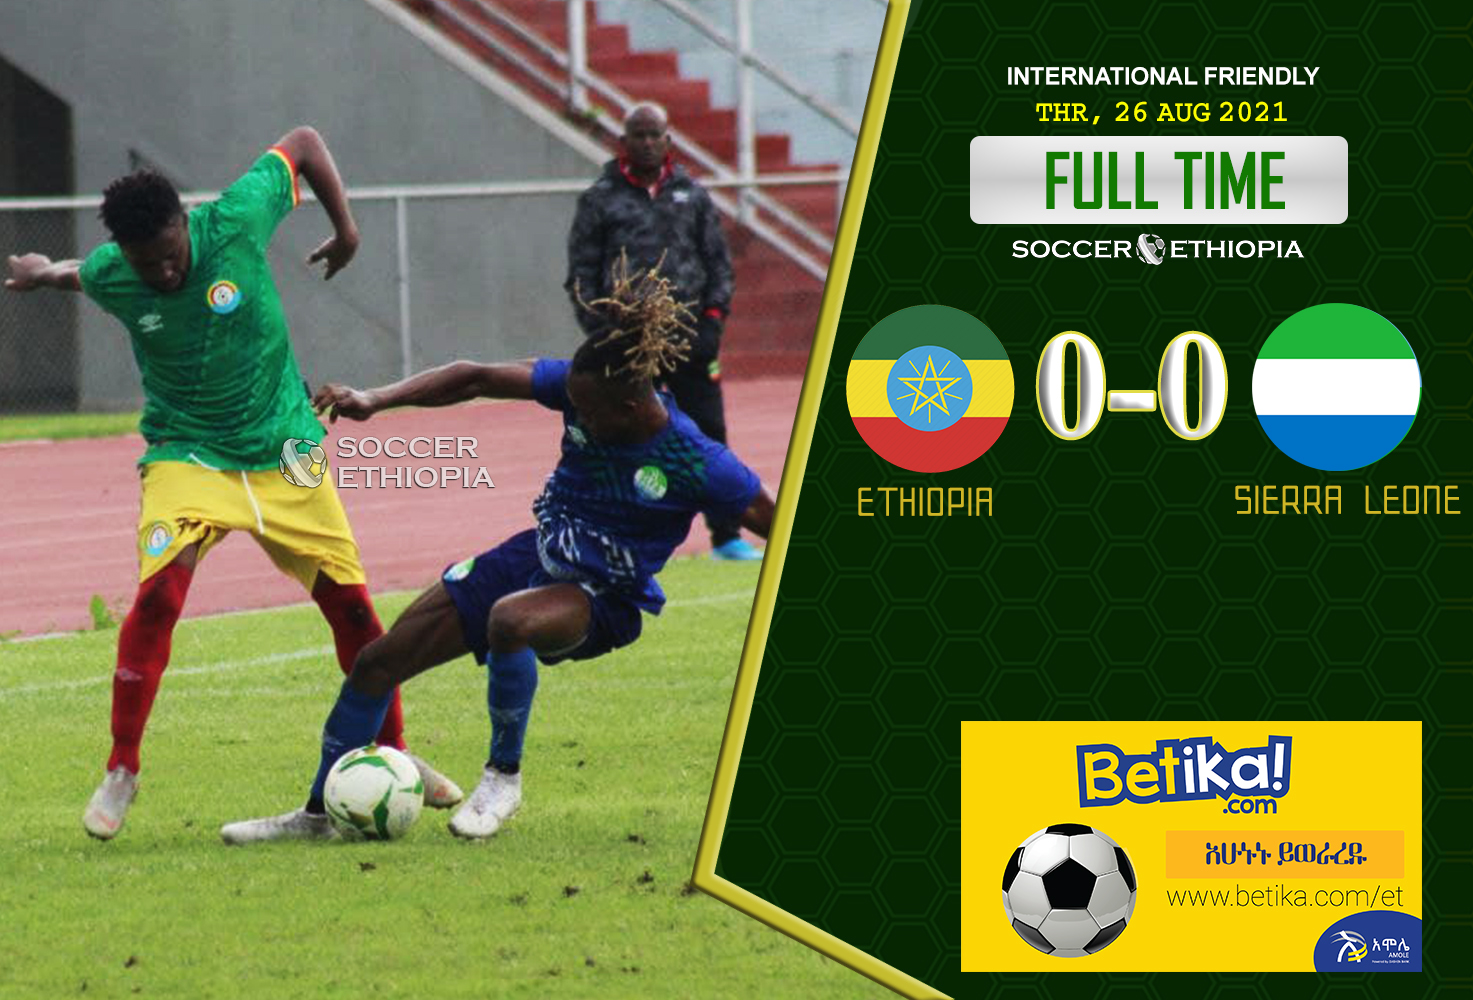 Sierra Leone Draws Ethiopia in Friendly Match